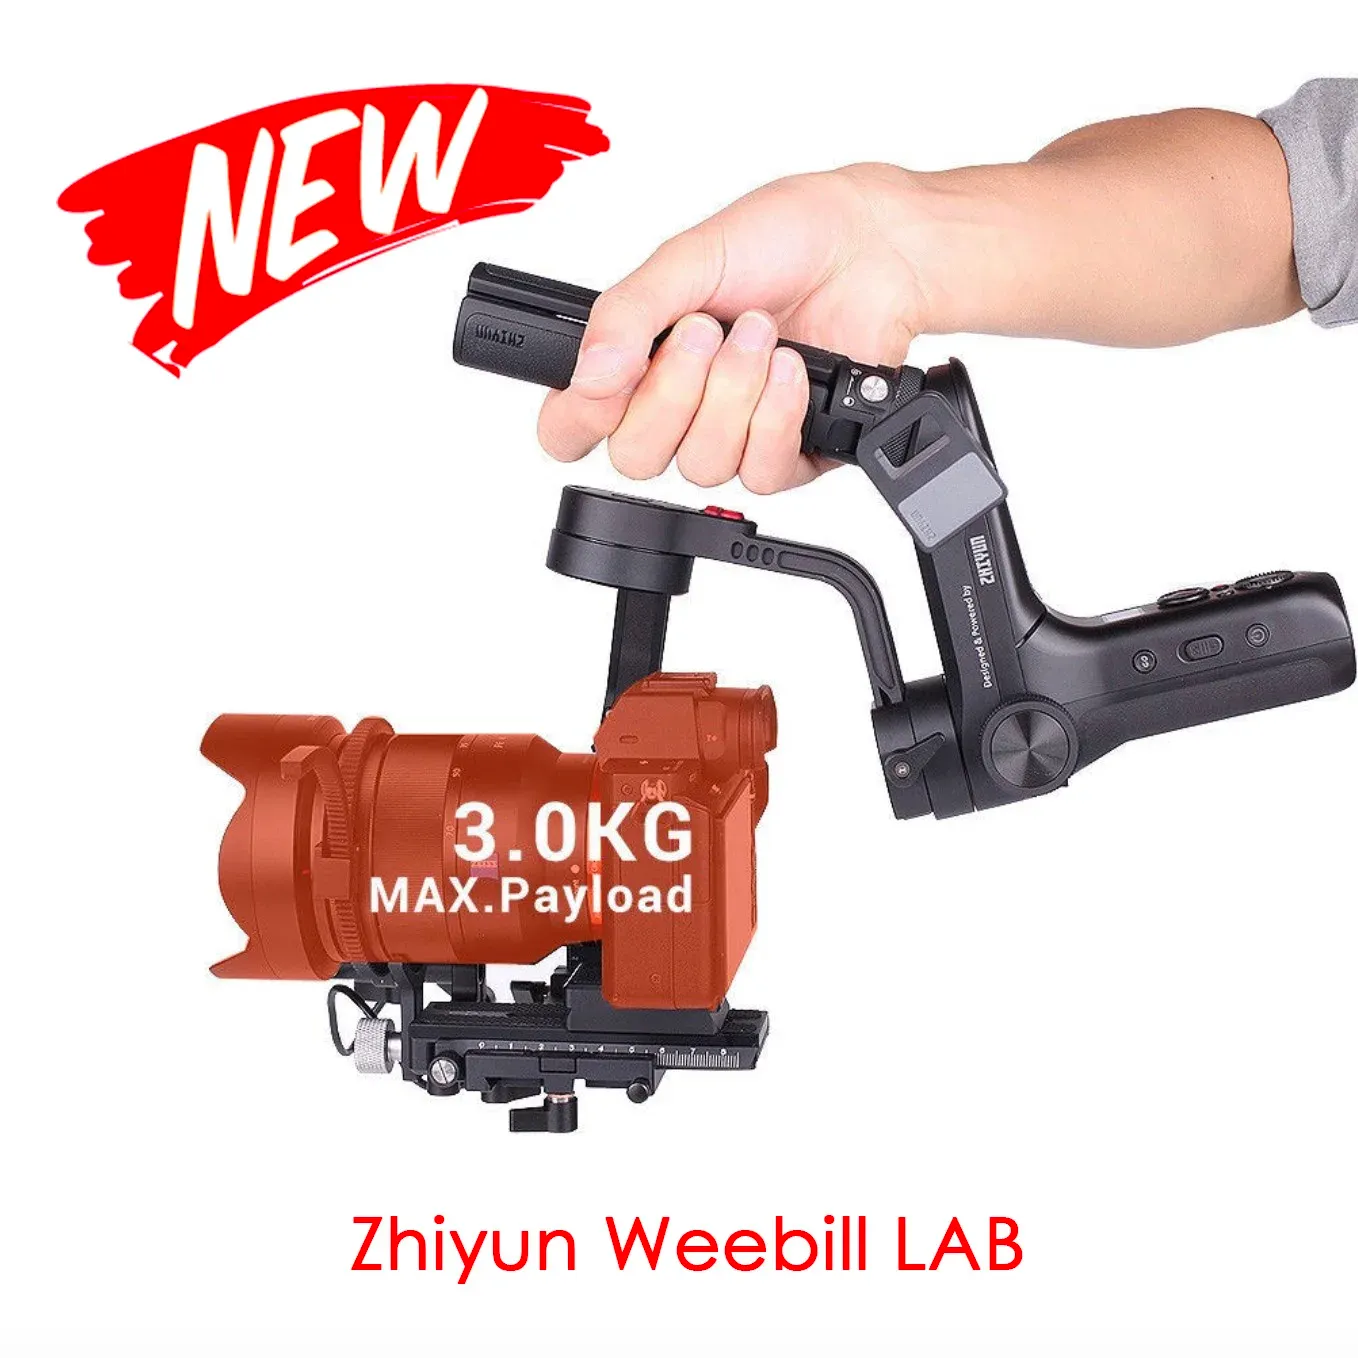 ヘッズZhiyun Weebill Lab 3Axis Gimbal Stabilizer for MirrorlessDSLR Cameras new